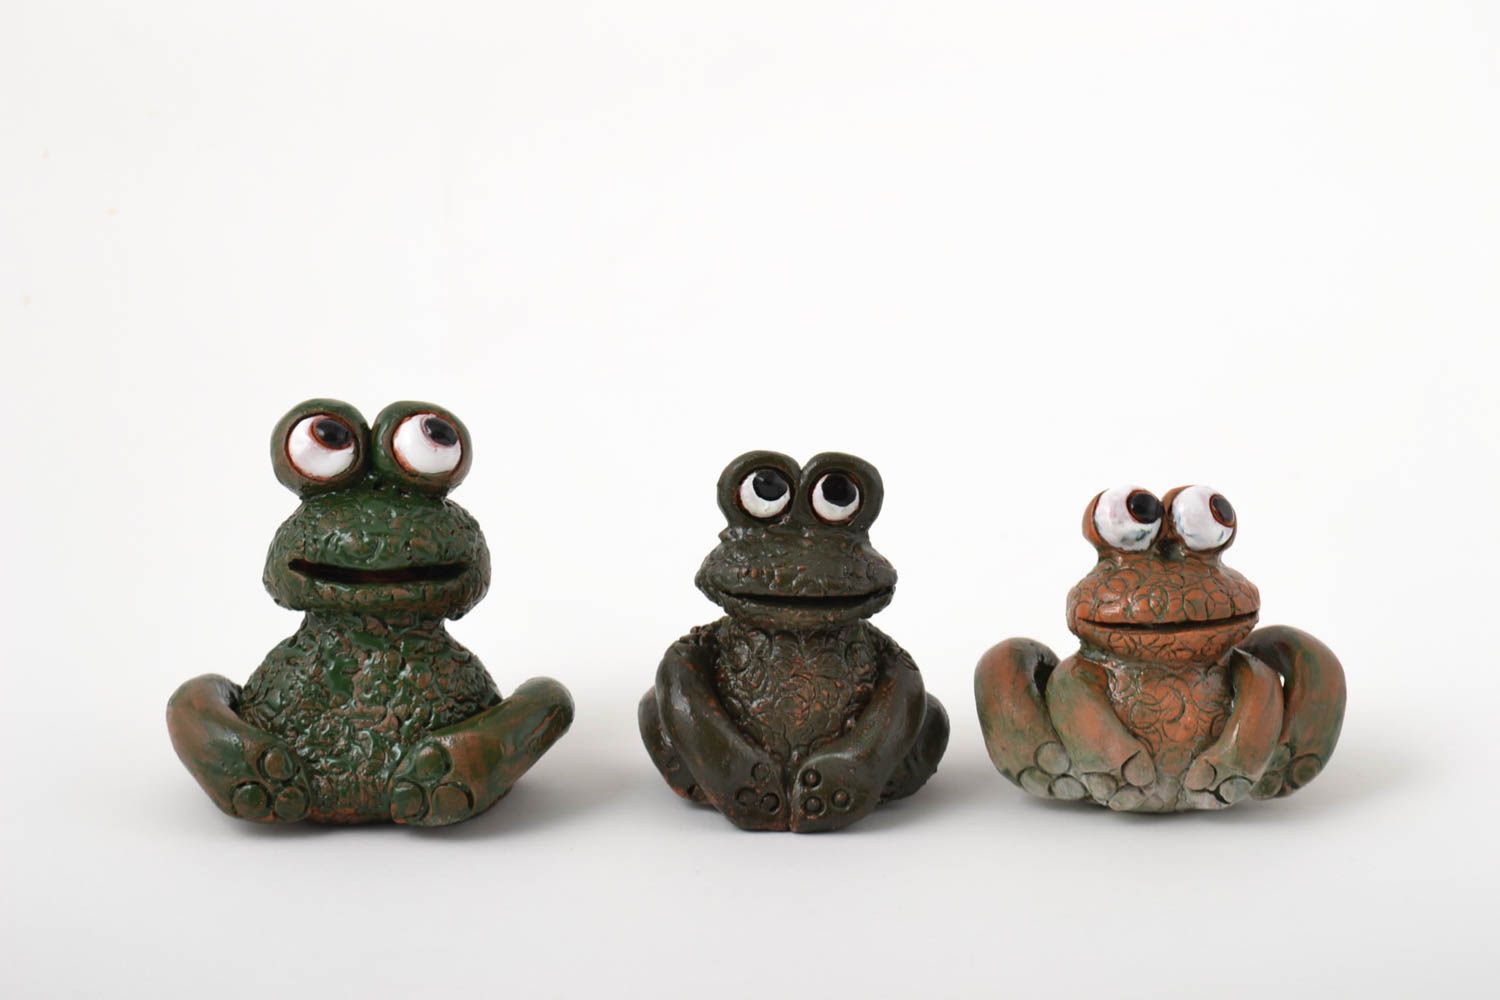 Игрушки из глины фигурки животных хэнд мейд коллекционные фигурки набор 3 штуки фото 2